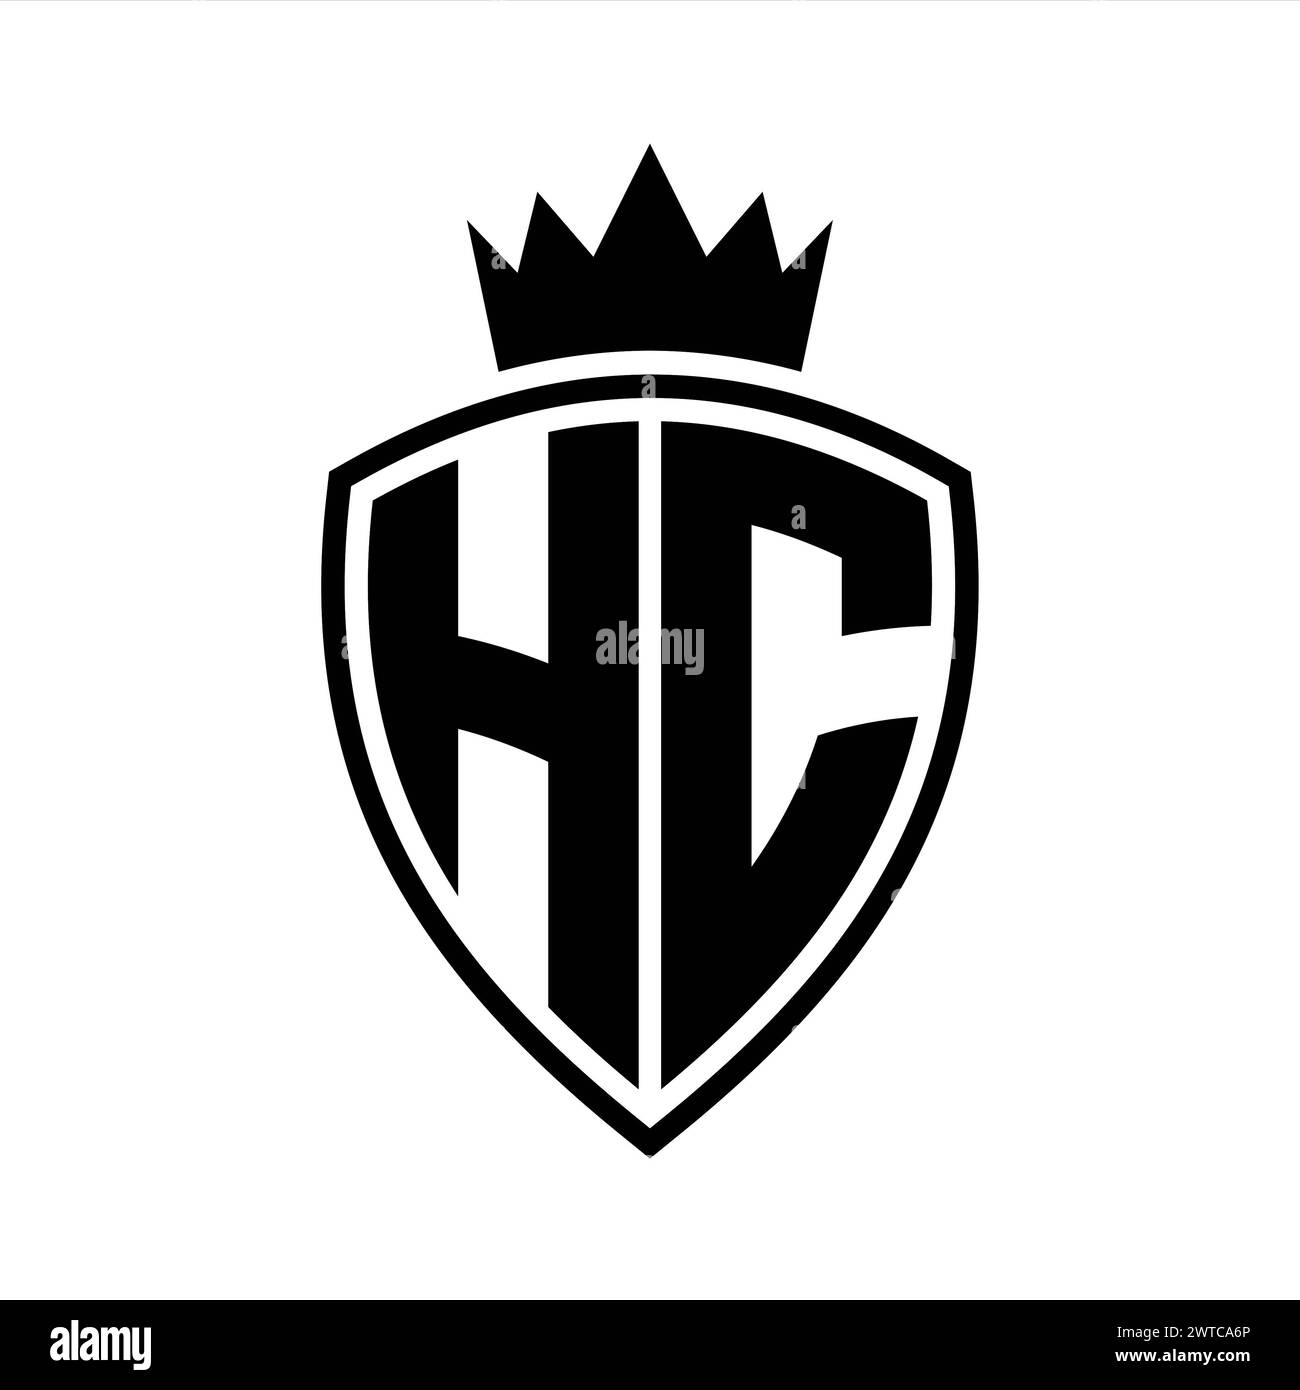 Auffälliges Monogramm des HC-Letters mit Schild- und Kronenumrissform mit schwarz-weißer Farbvorlage Stockfoto